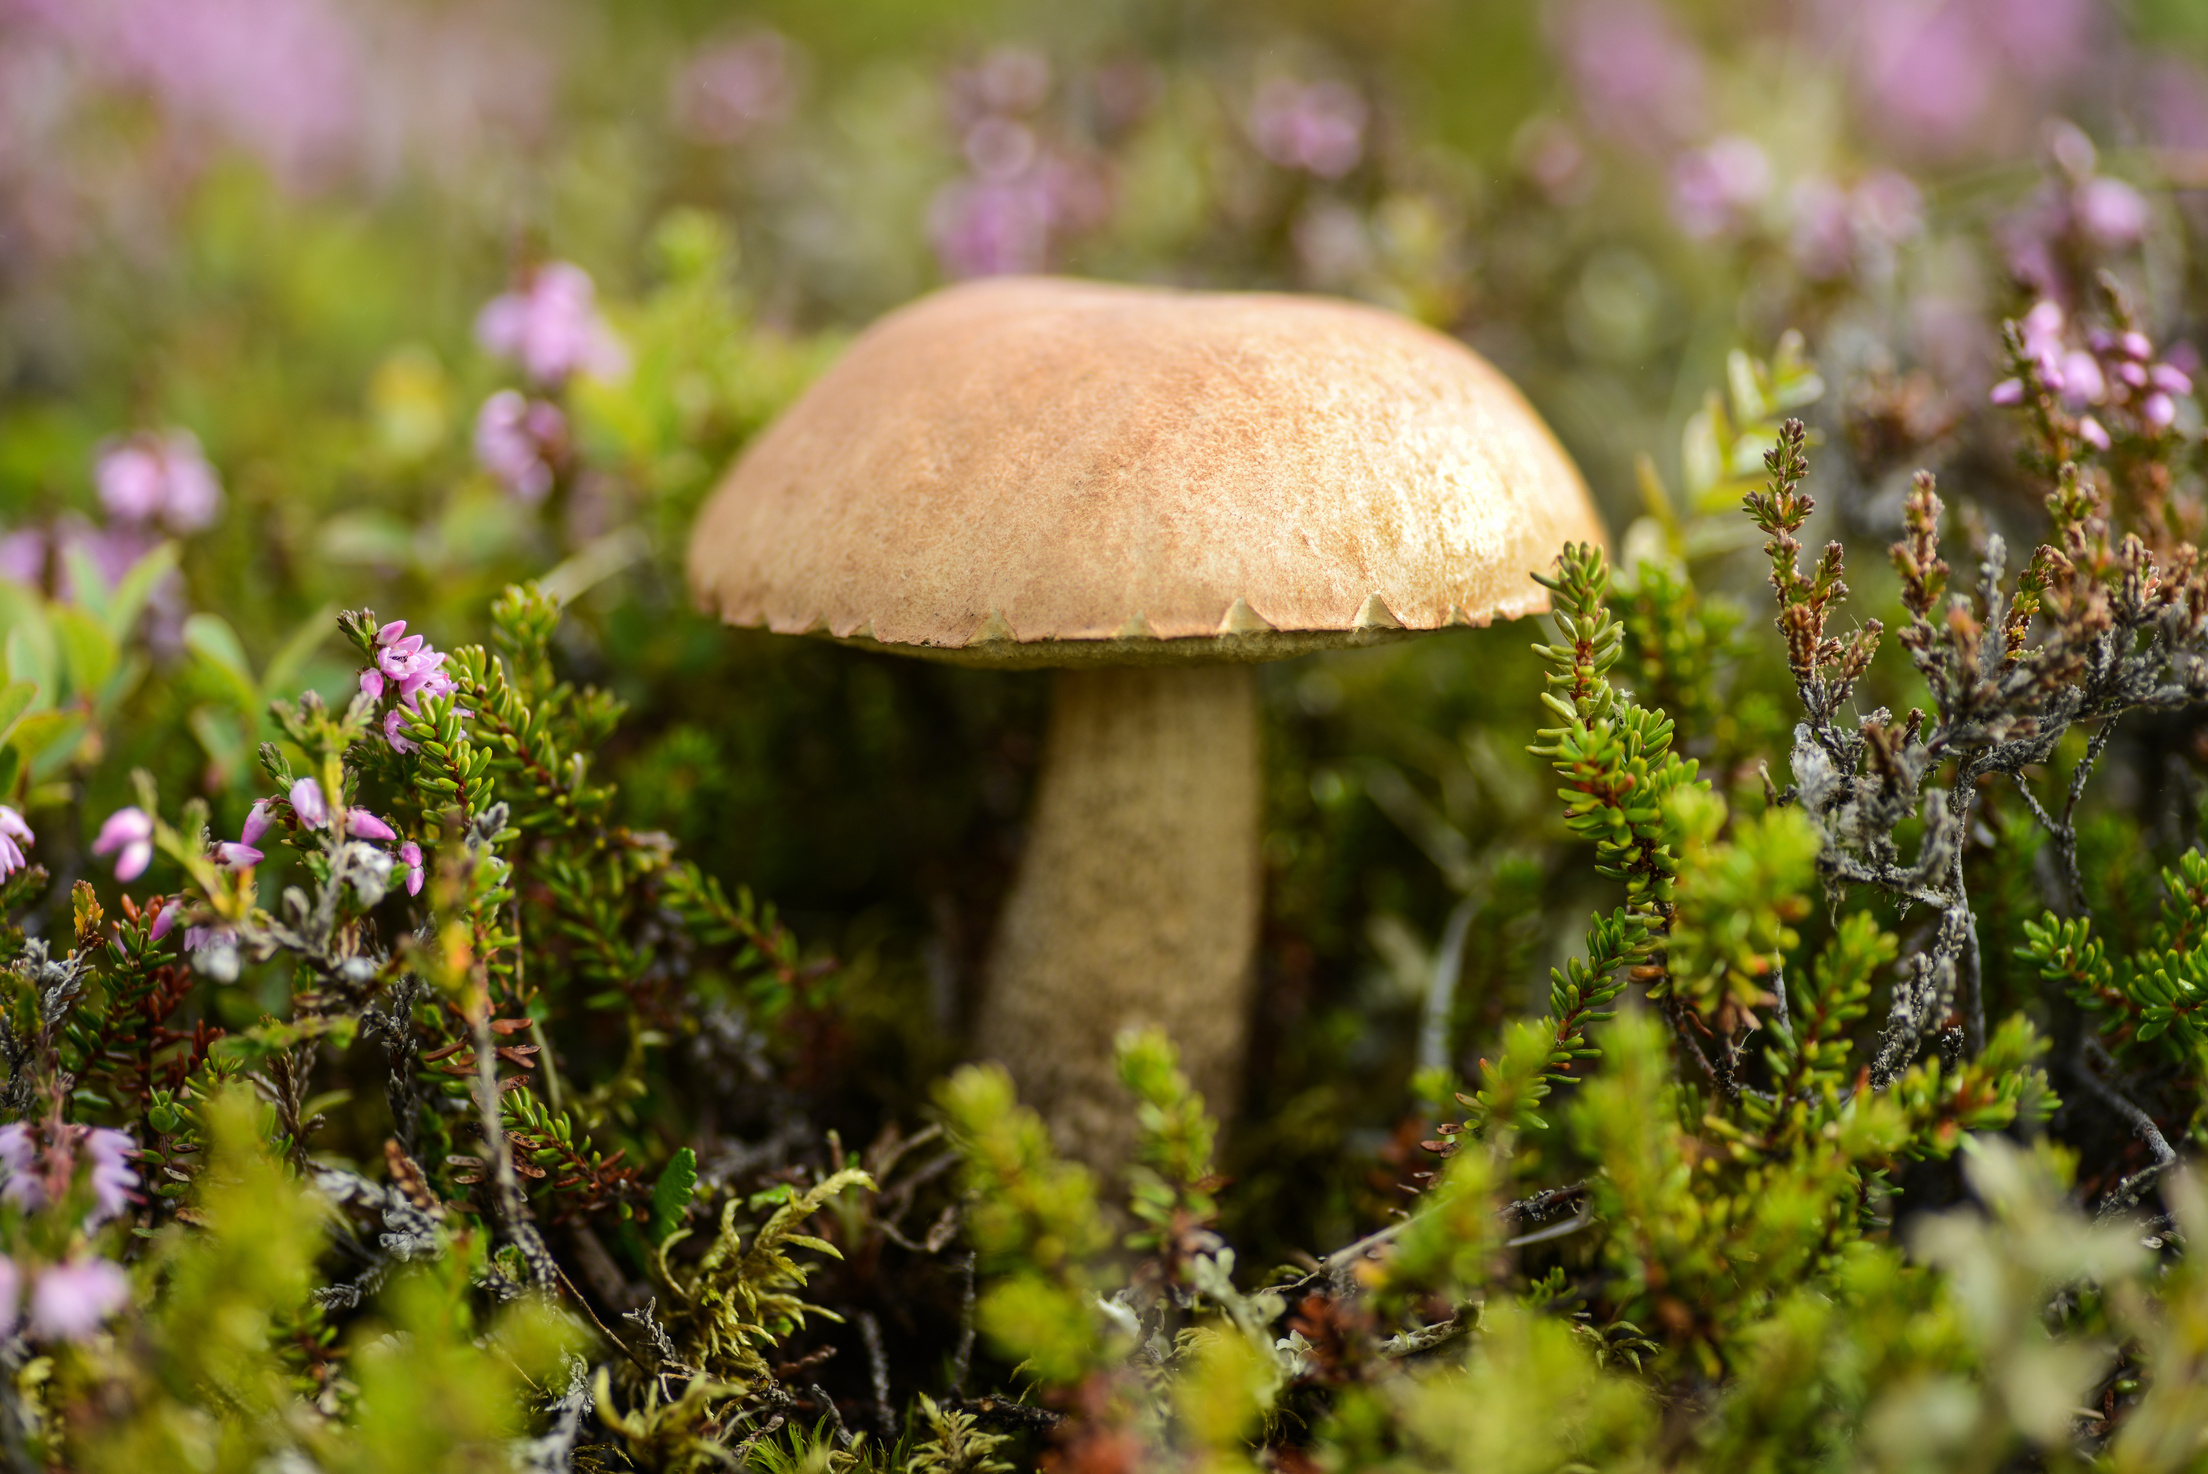 boletus mushrooms in pagan